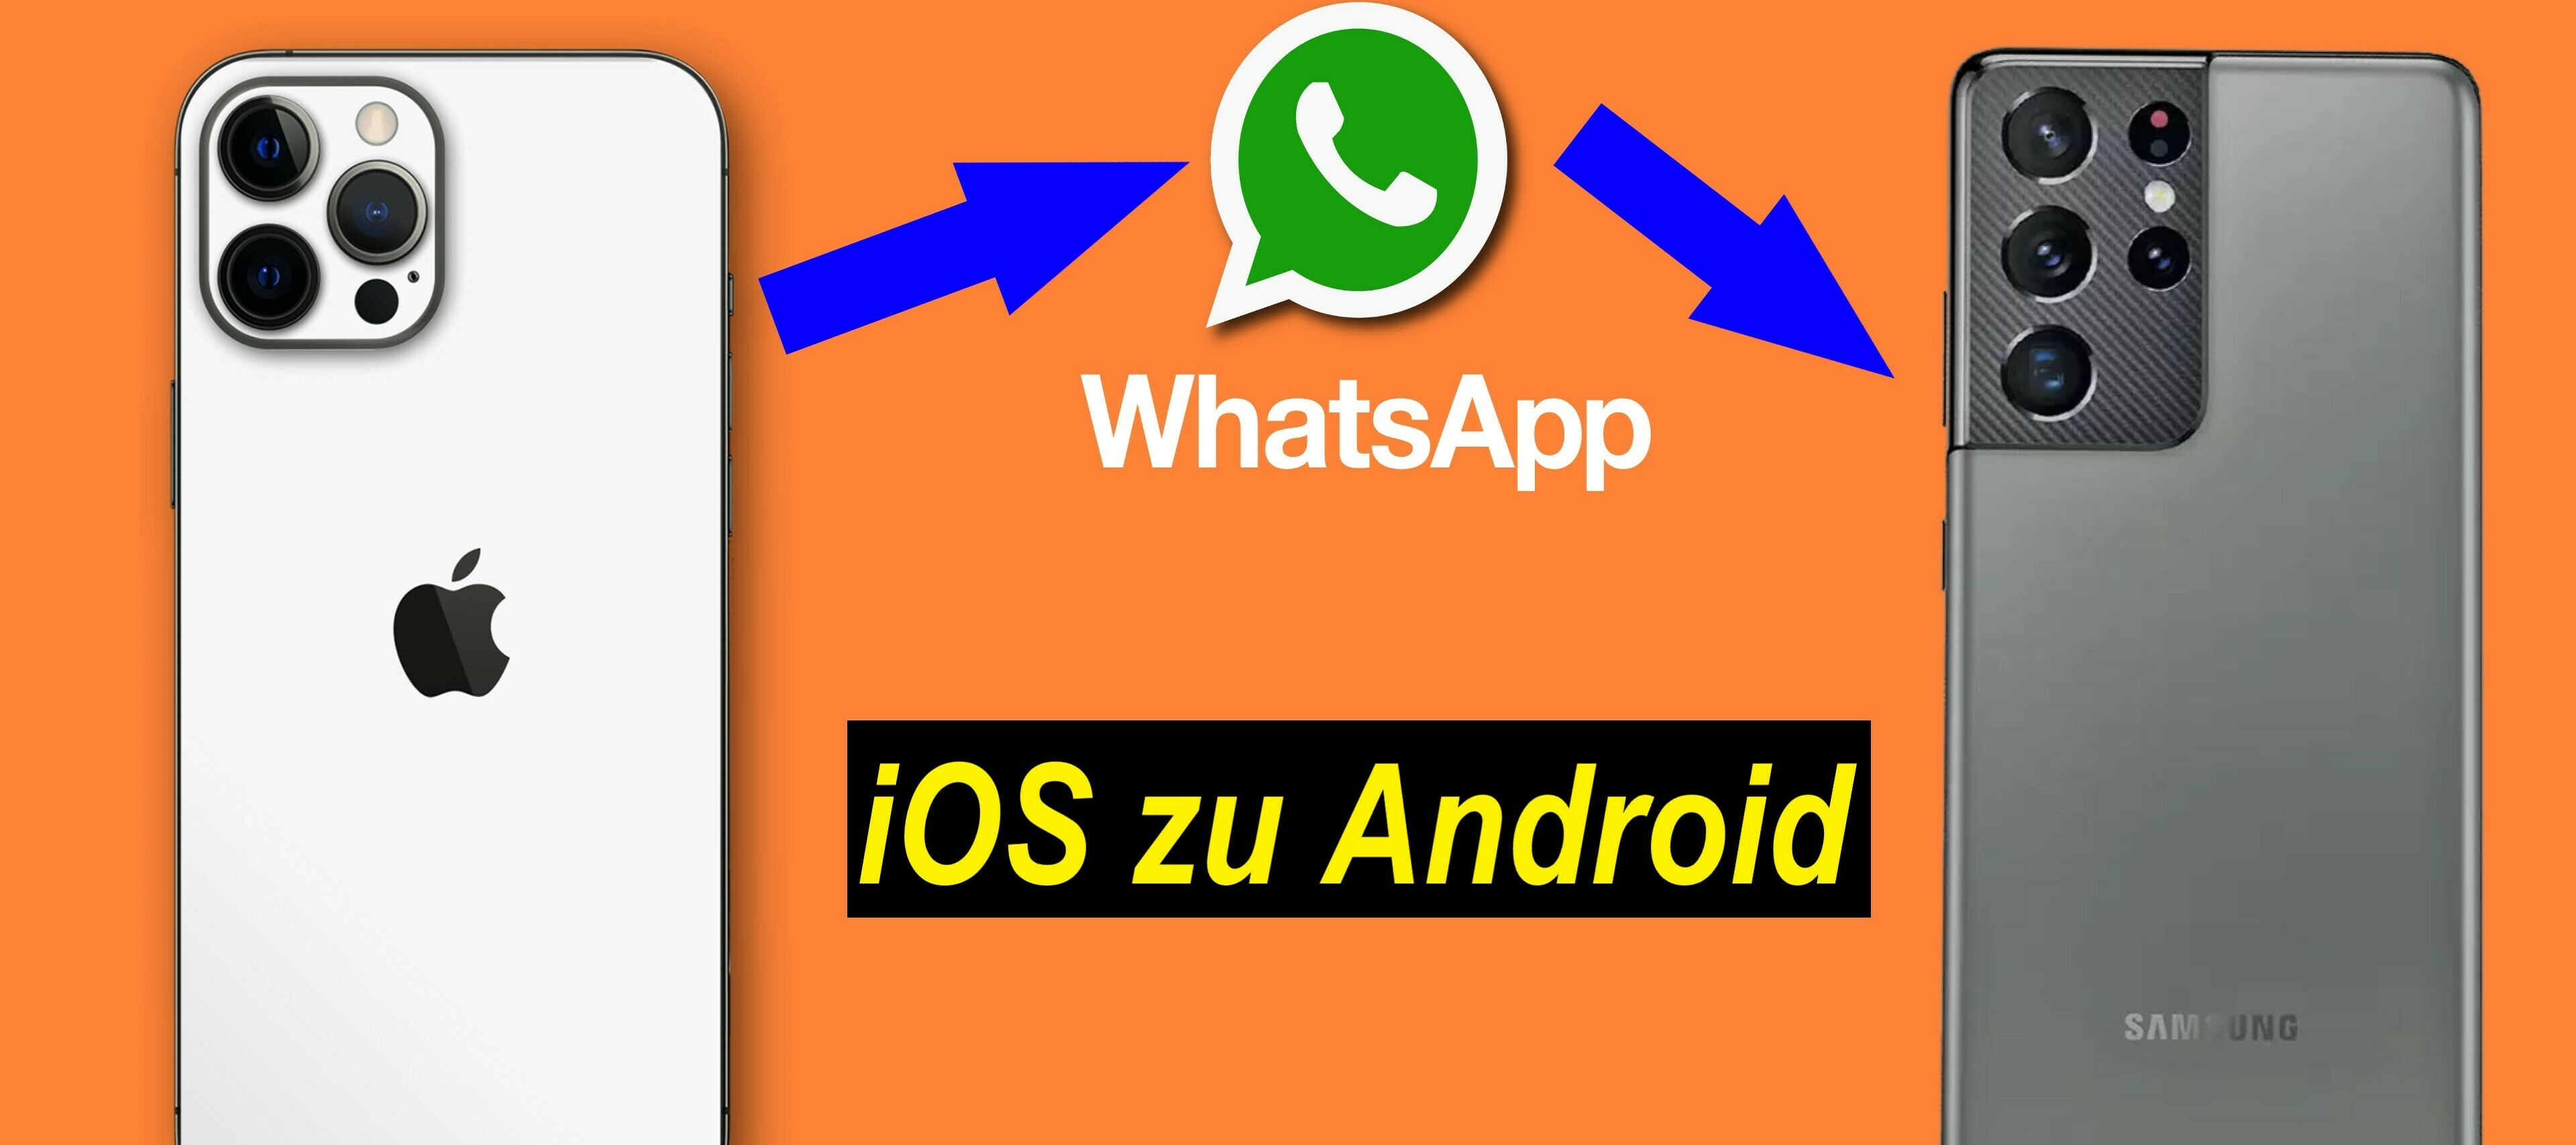 Tutorial: WhatsApp Chats von iOS zu Android übertragen. Ganz einfach!